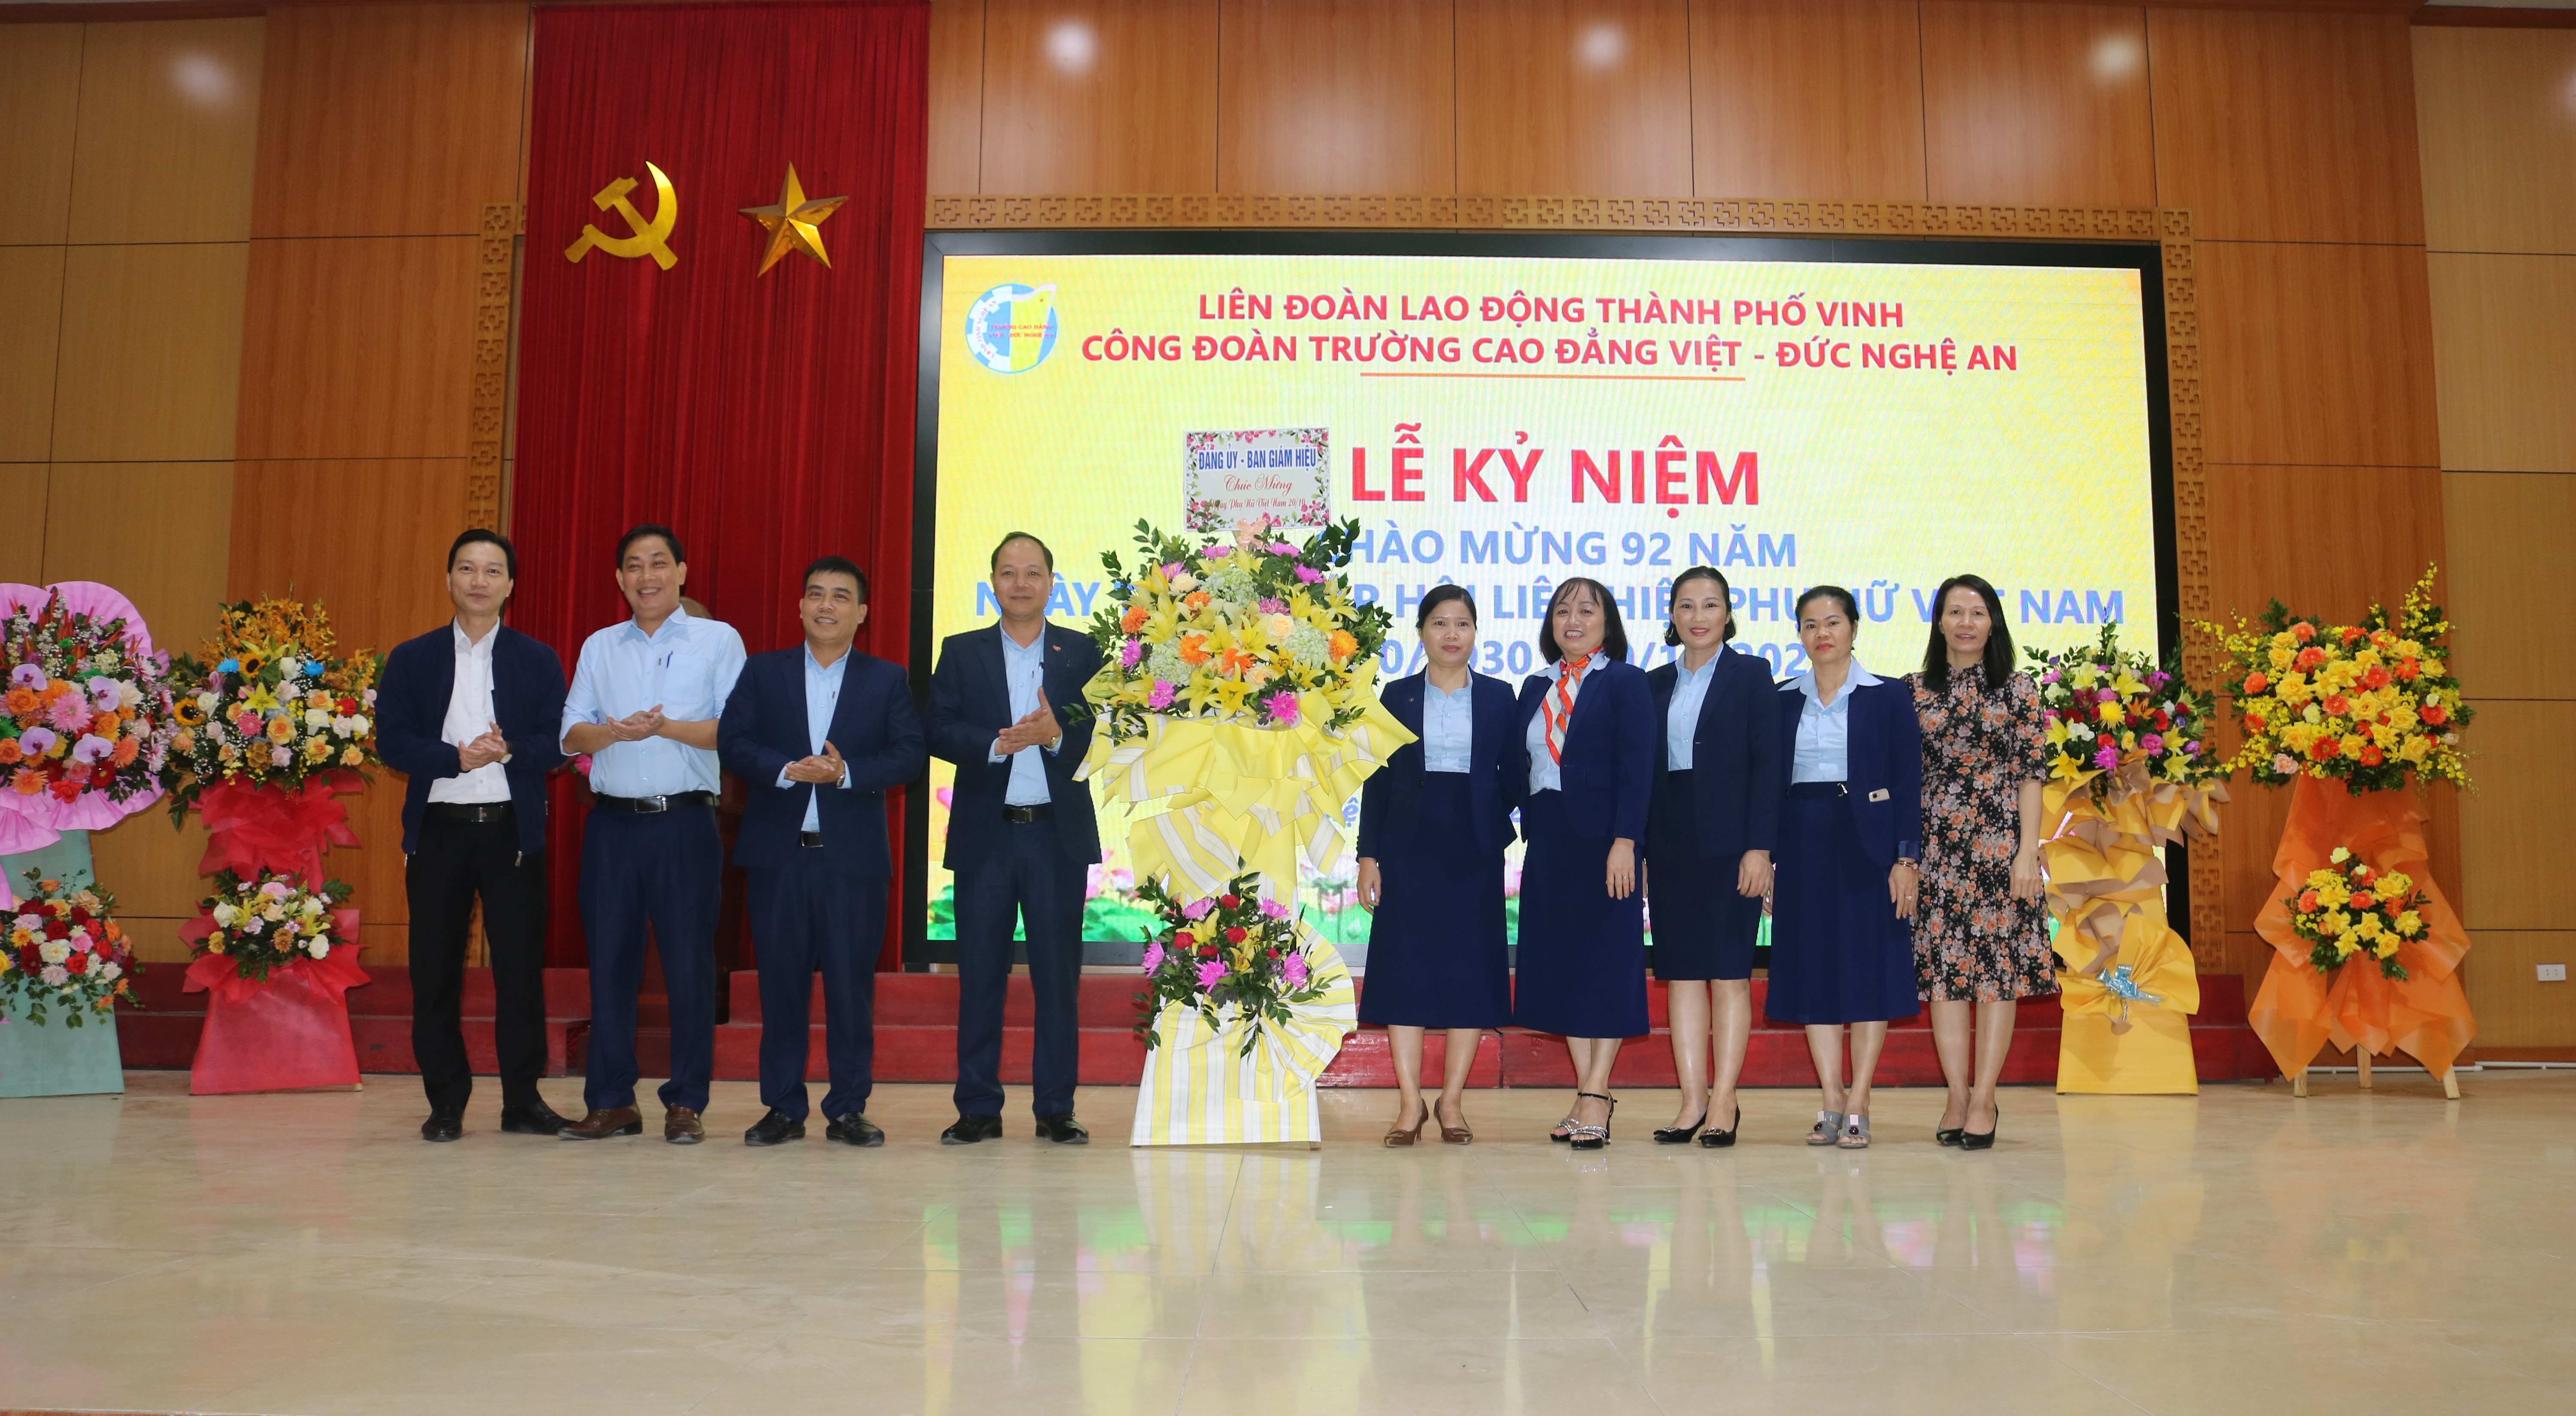  Tọa đàm kỷ niệm 92 năm ngày thành lập Hội Liên hiệp Phụ nữ Việt Nam (20/10/1930 -20/10/2022)